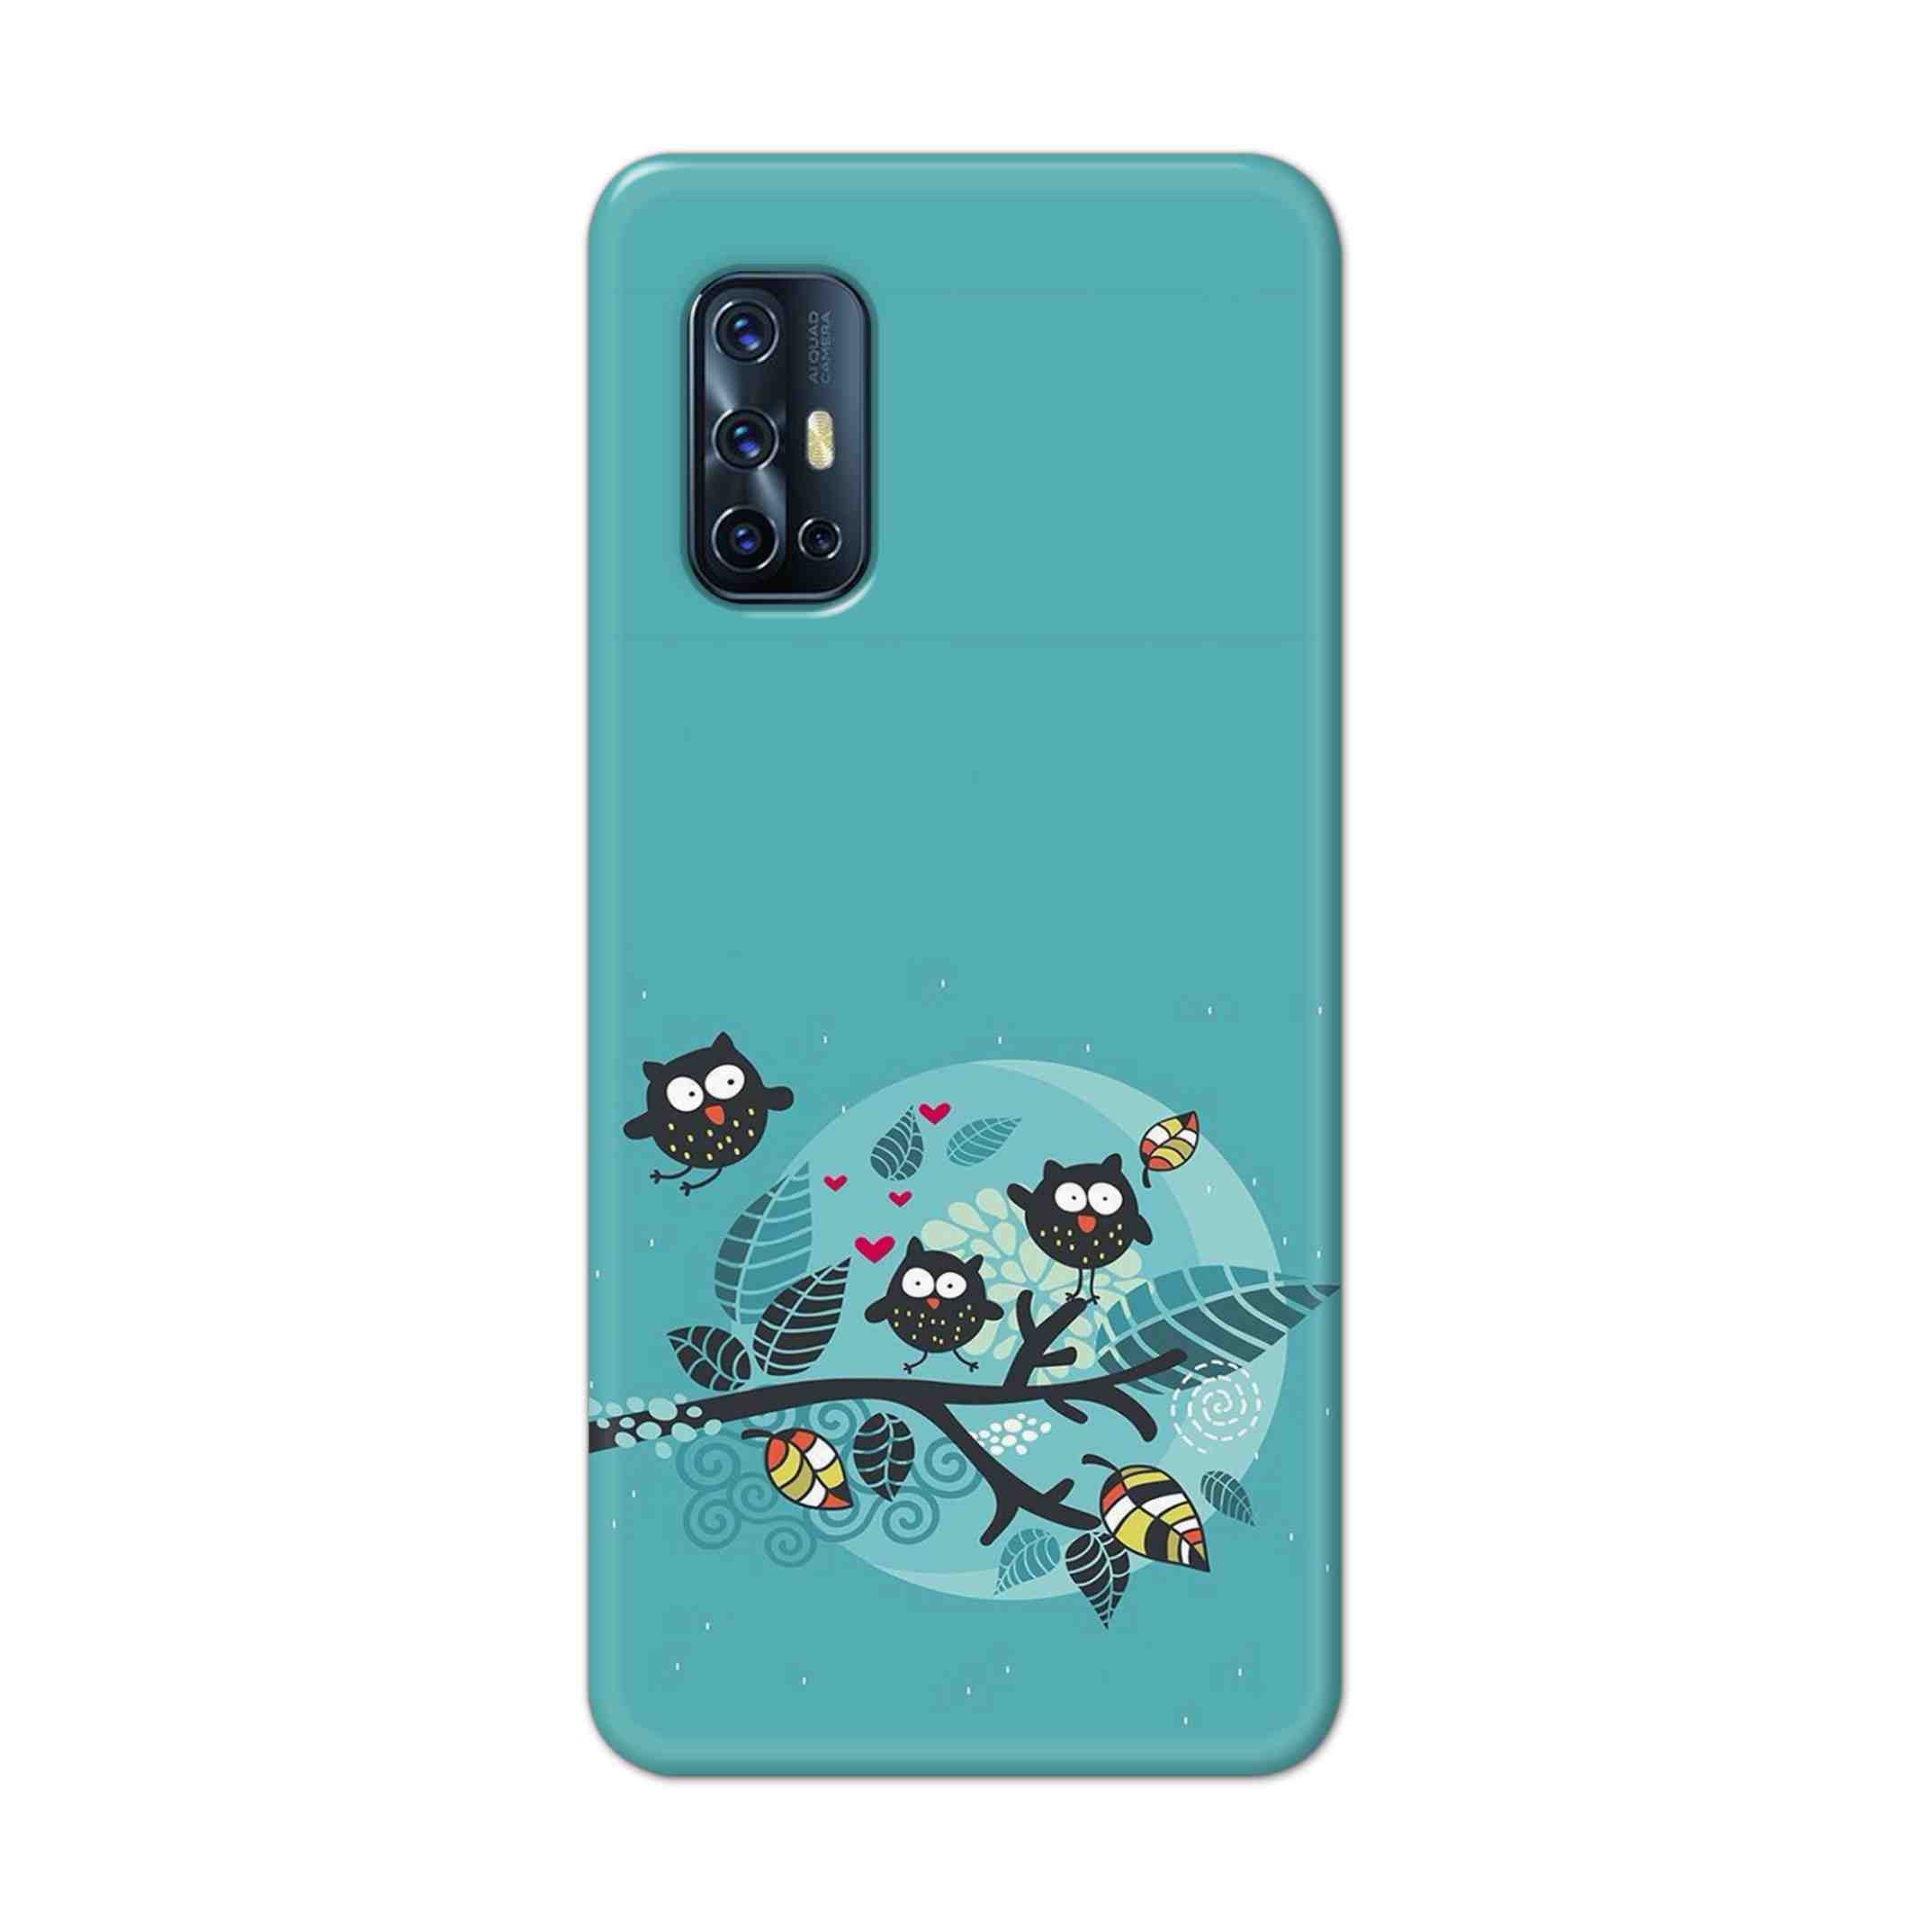 Buy Owl Hard Back Mobile Phone Case Cover For Vivo V17 Online